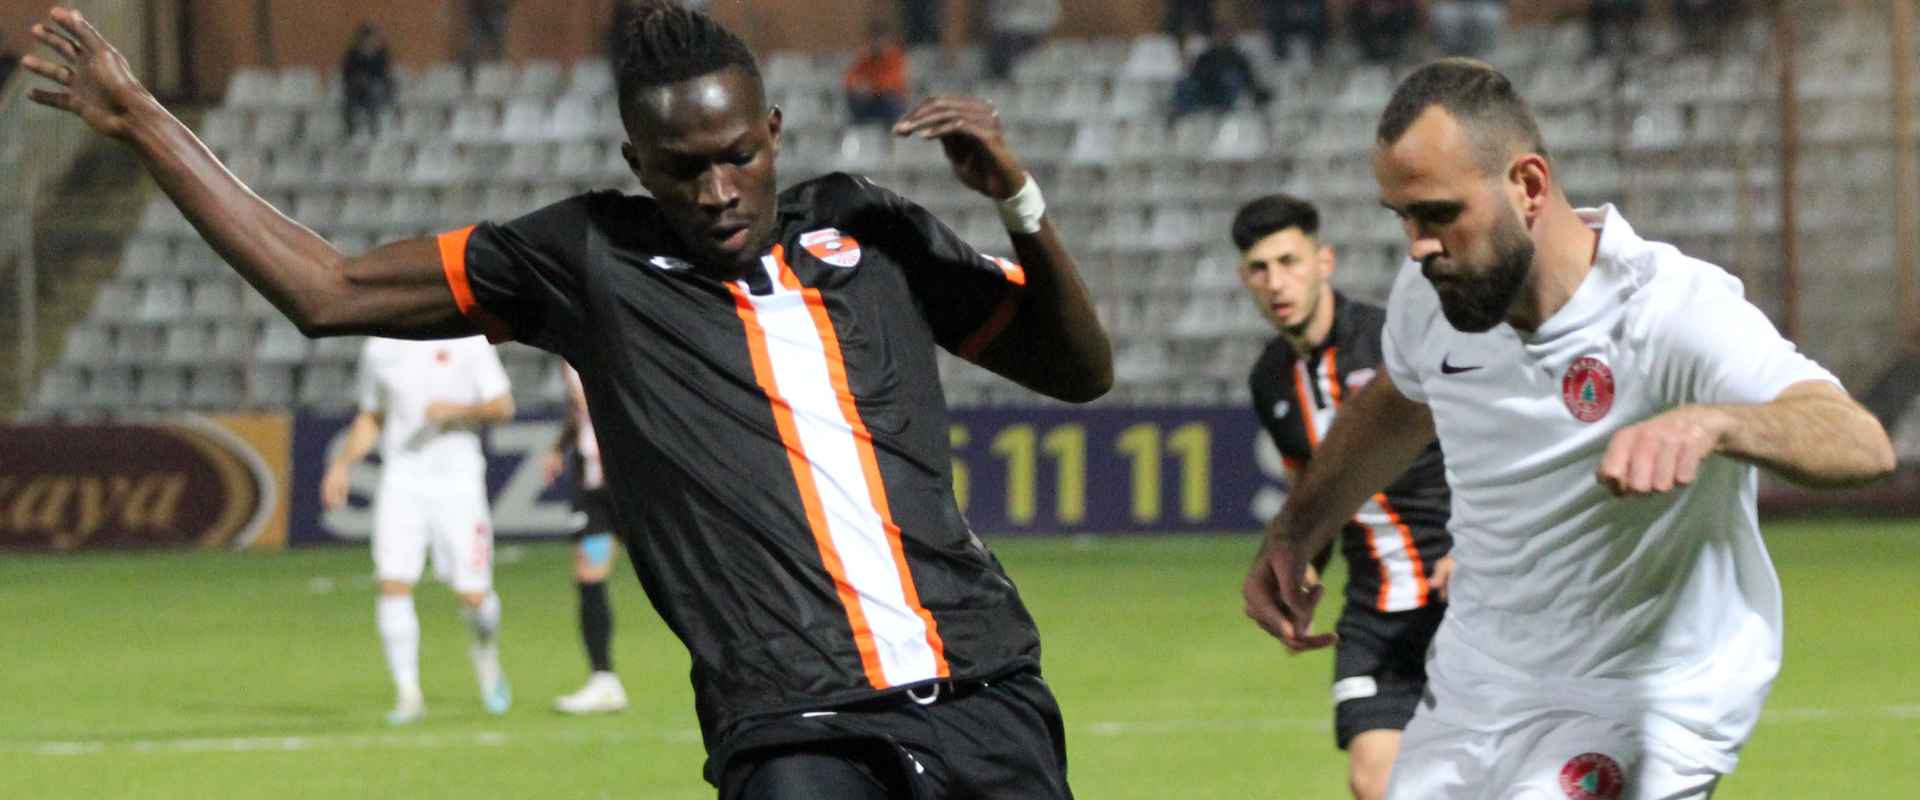 Adanaspor'umuz 0-1 Ümraniyespor